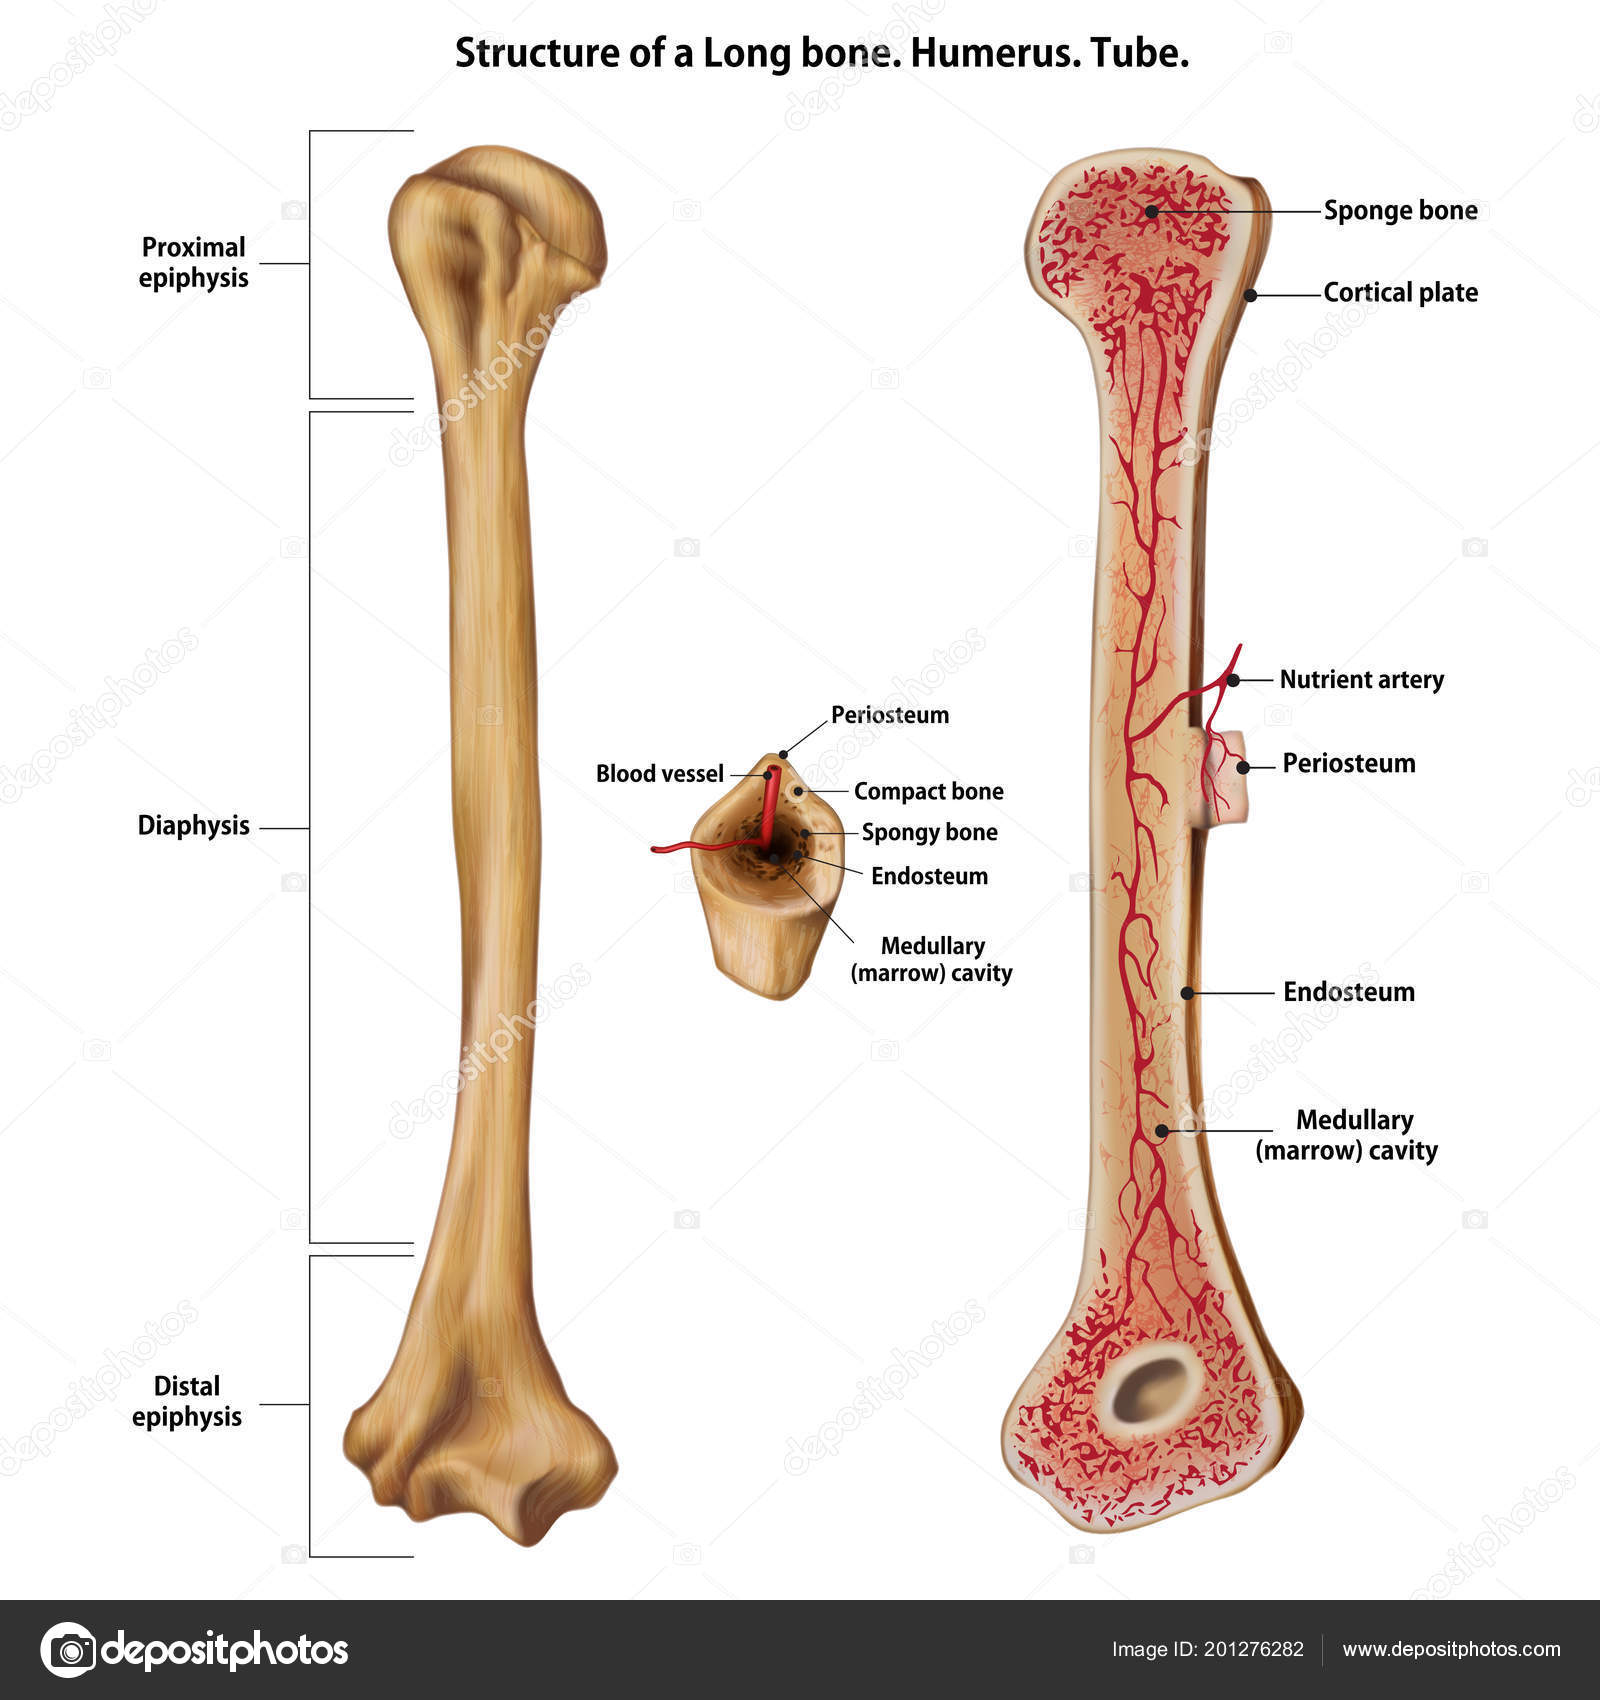 Удлиненная кость. Длинная кость. Трубочные кости. Эндост кости. Строение длинных костей periosteum.